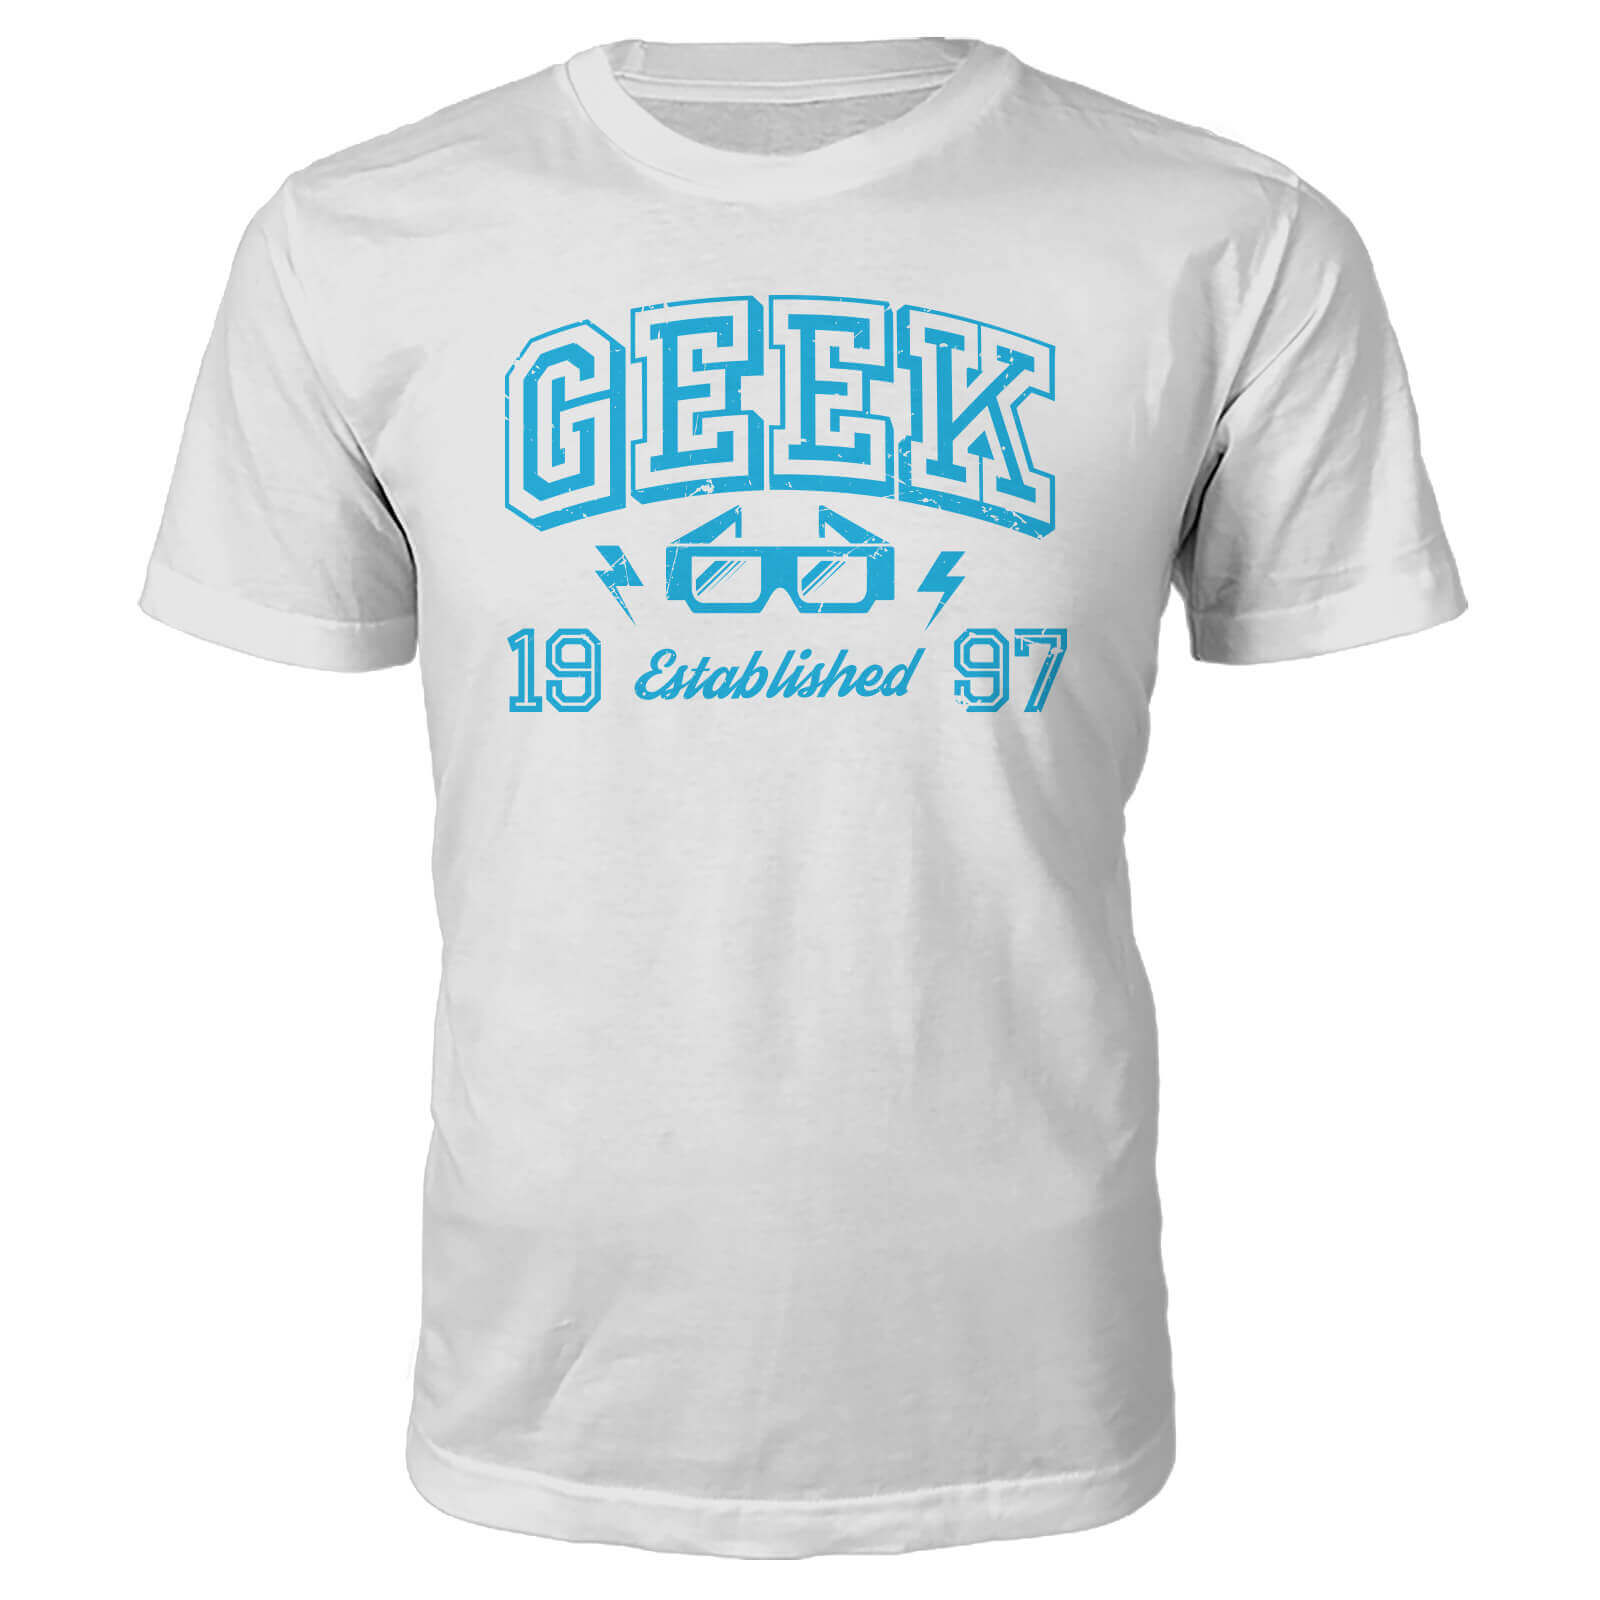 Geek Established 1990's T-Shirt- White - M - 1997